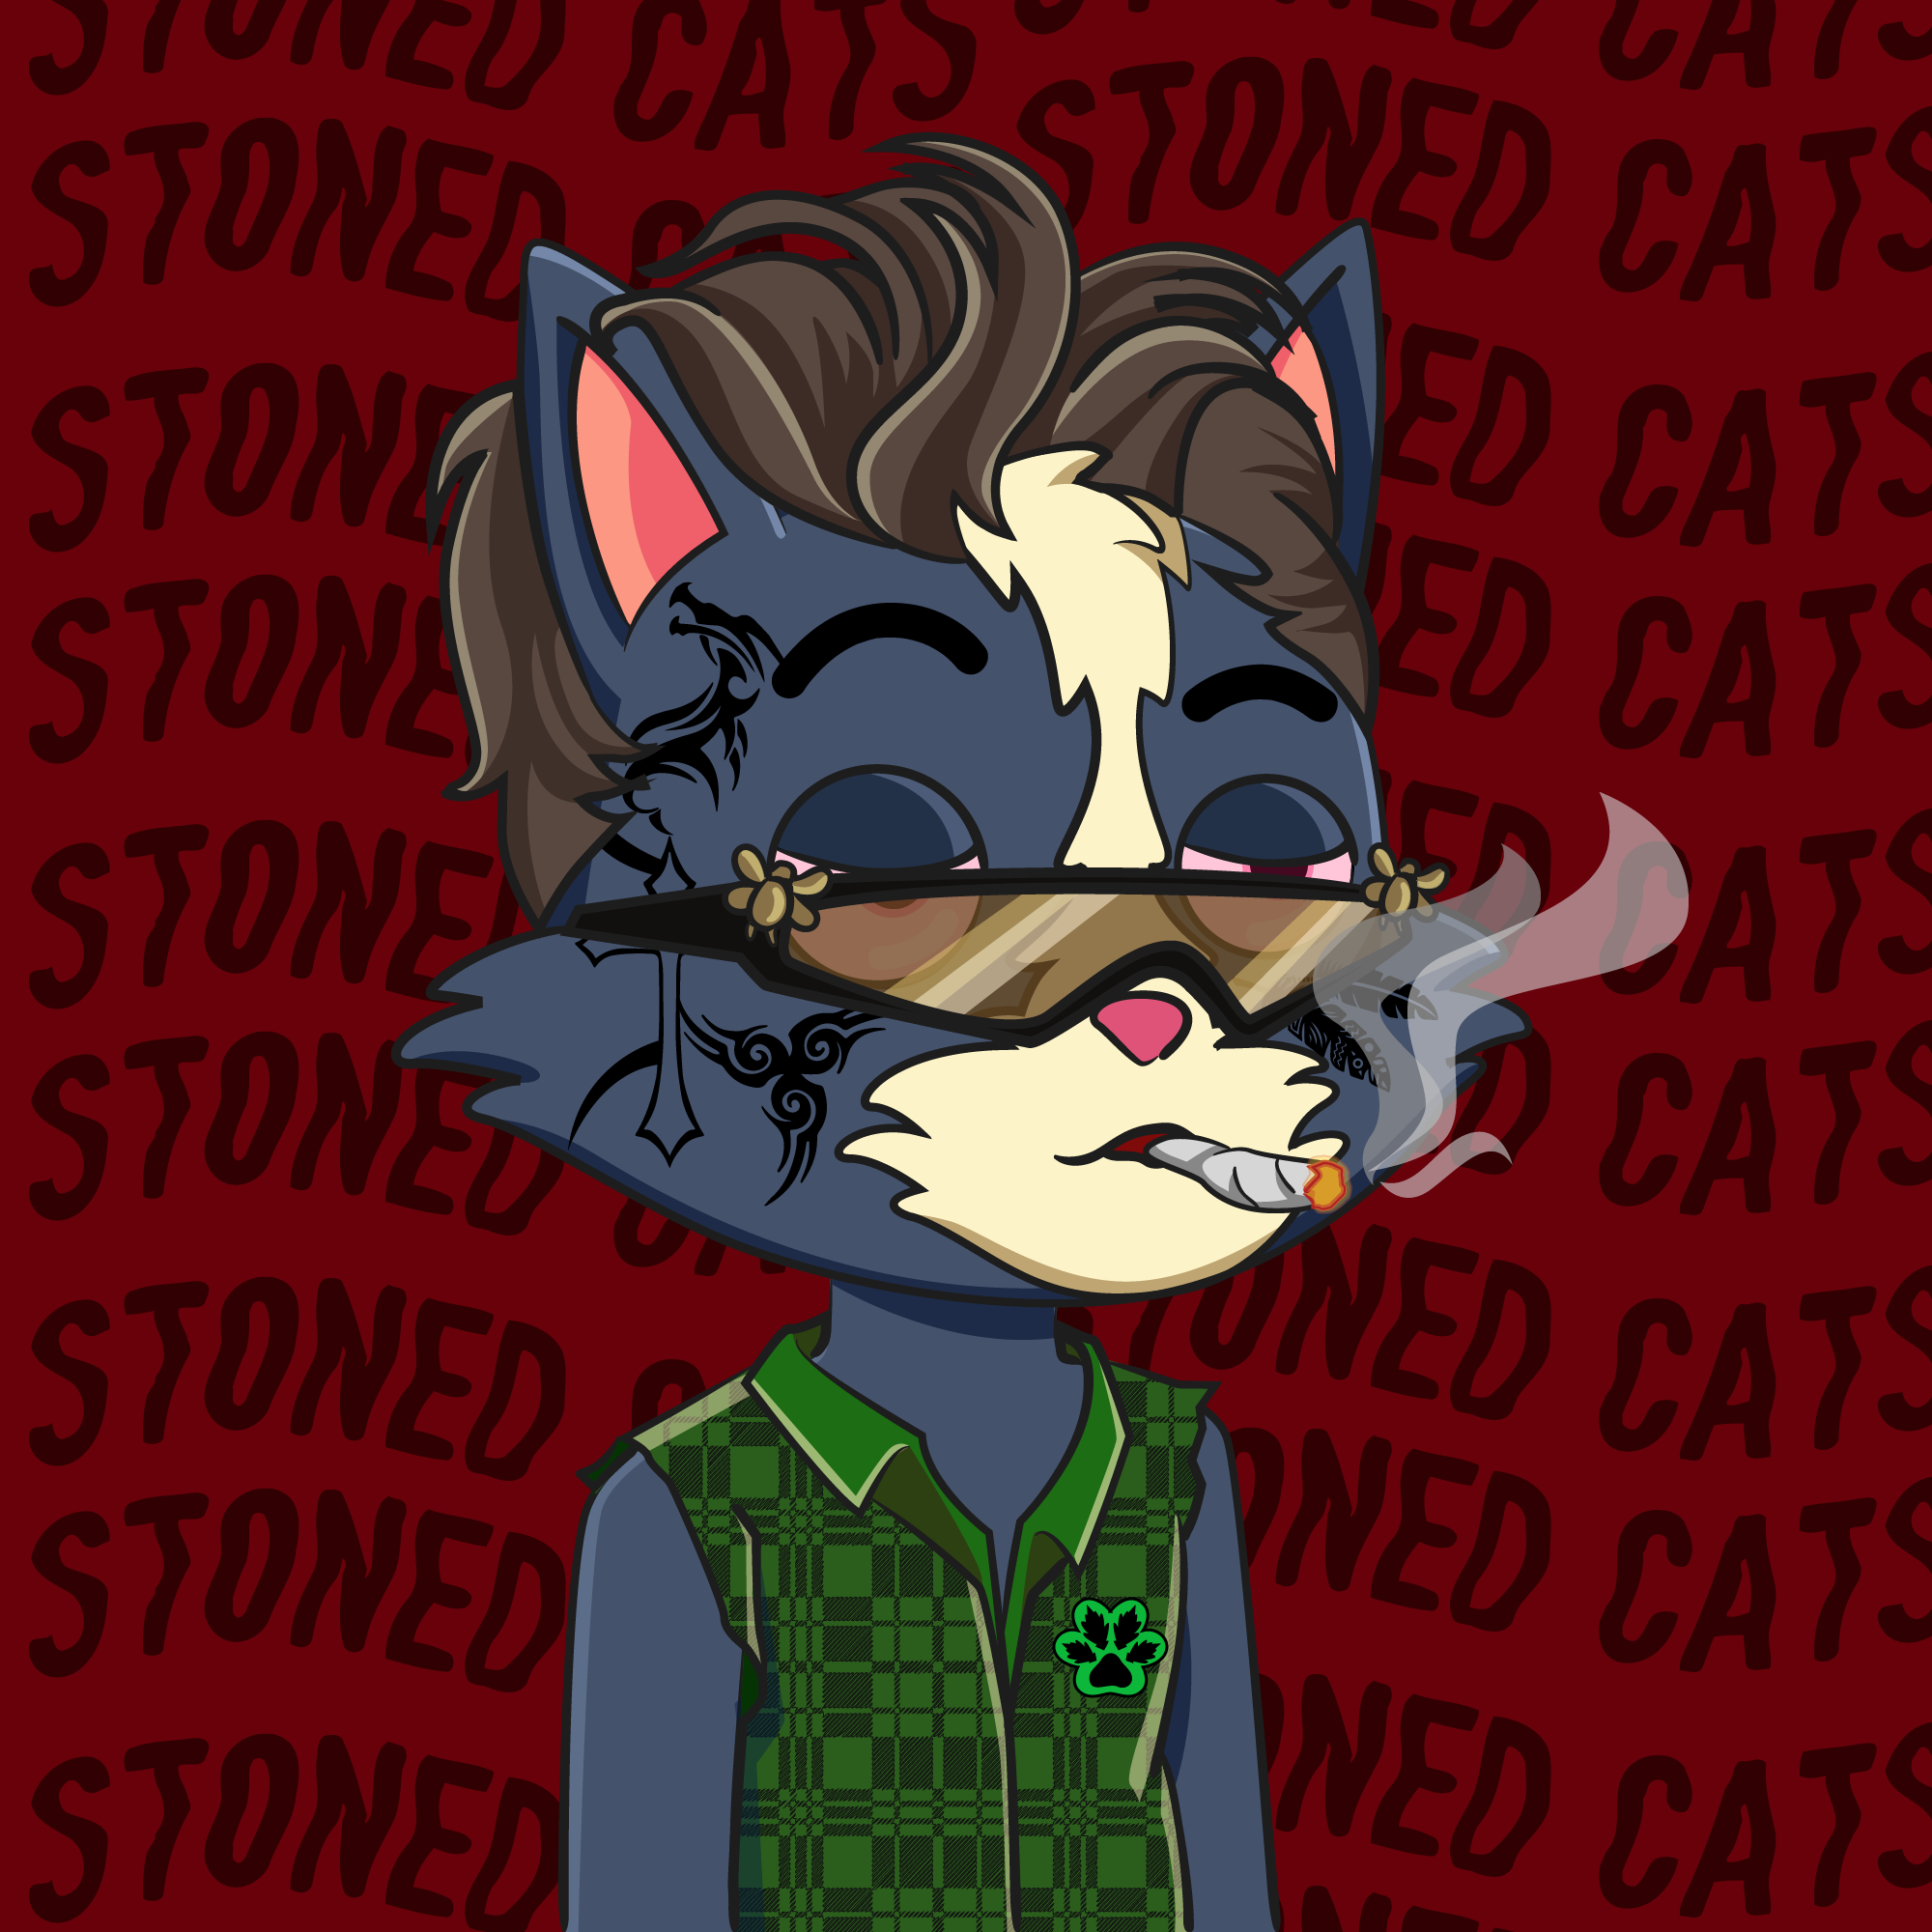 Stoned Cat #2781